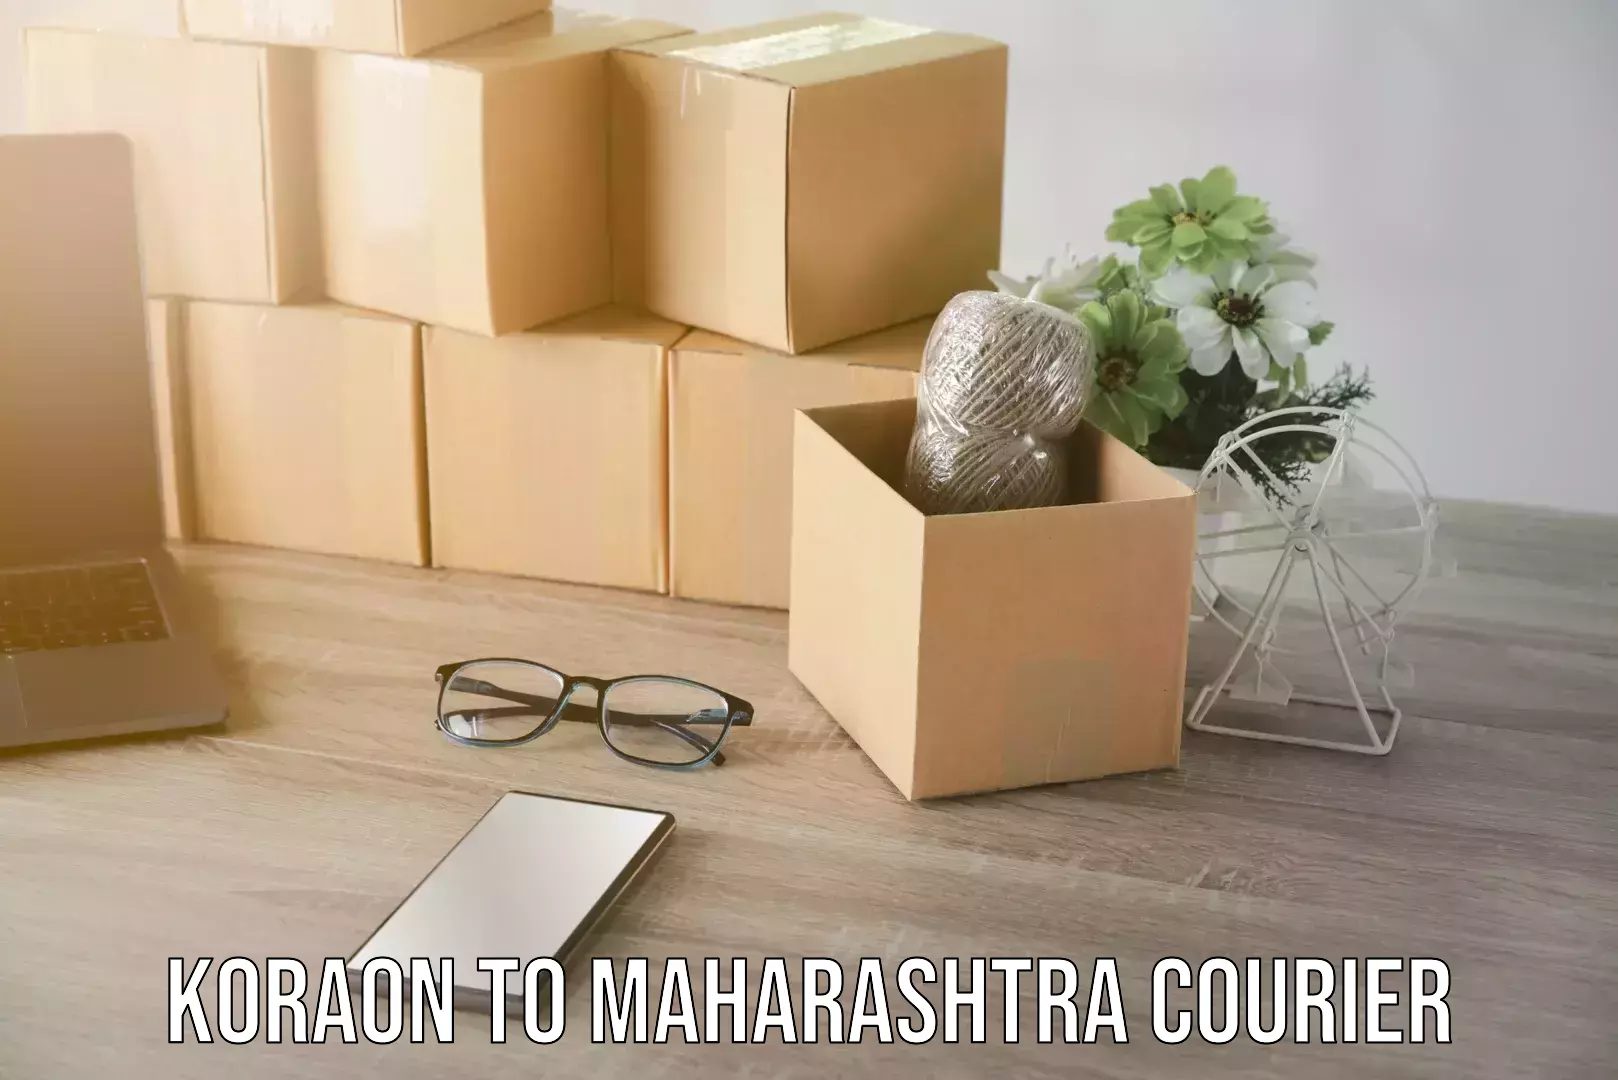 Specialized moving company Koraon to Maharashtra